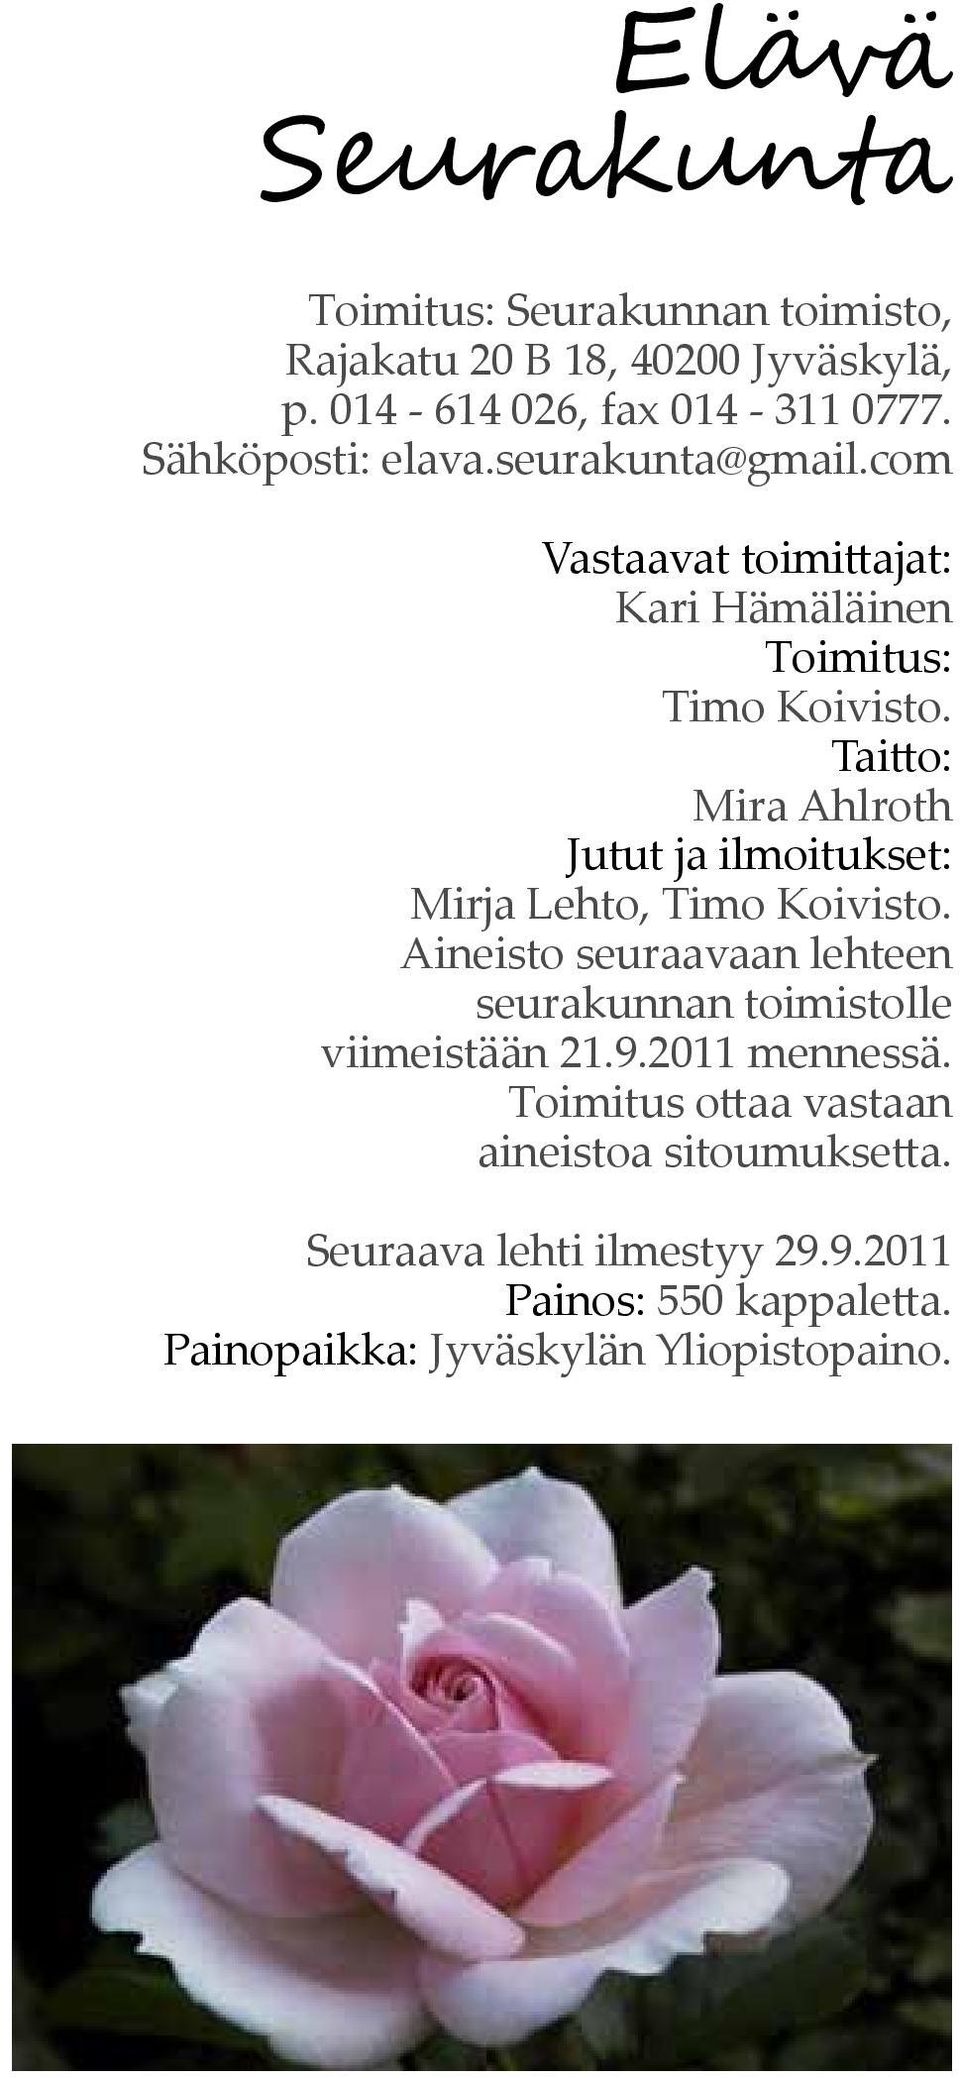 Taitto: Mira Ahlroth Jutut ja ilmoitukset: Mirja Lehto, Timo Koivisto.